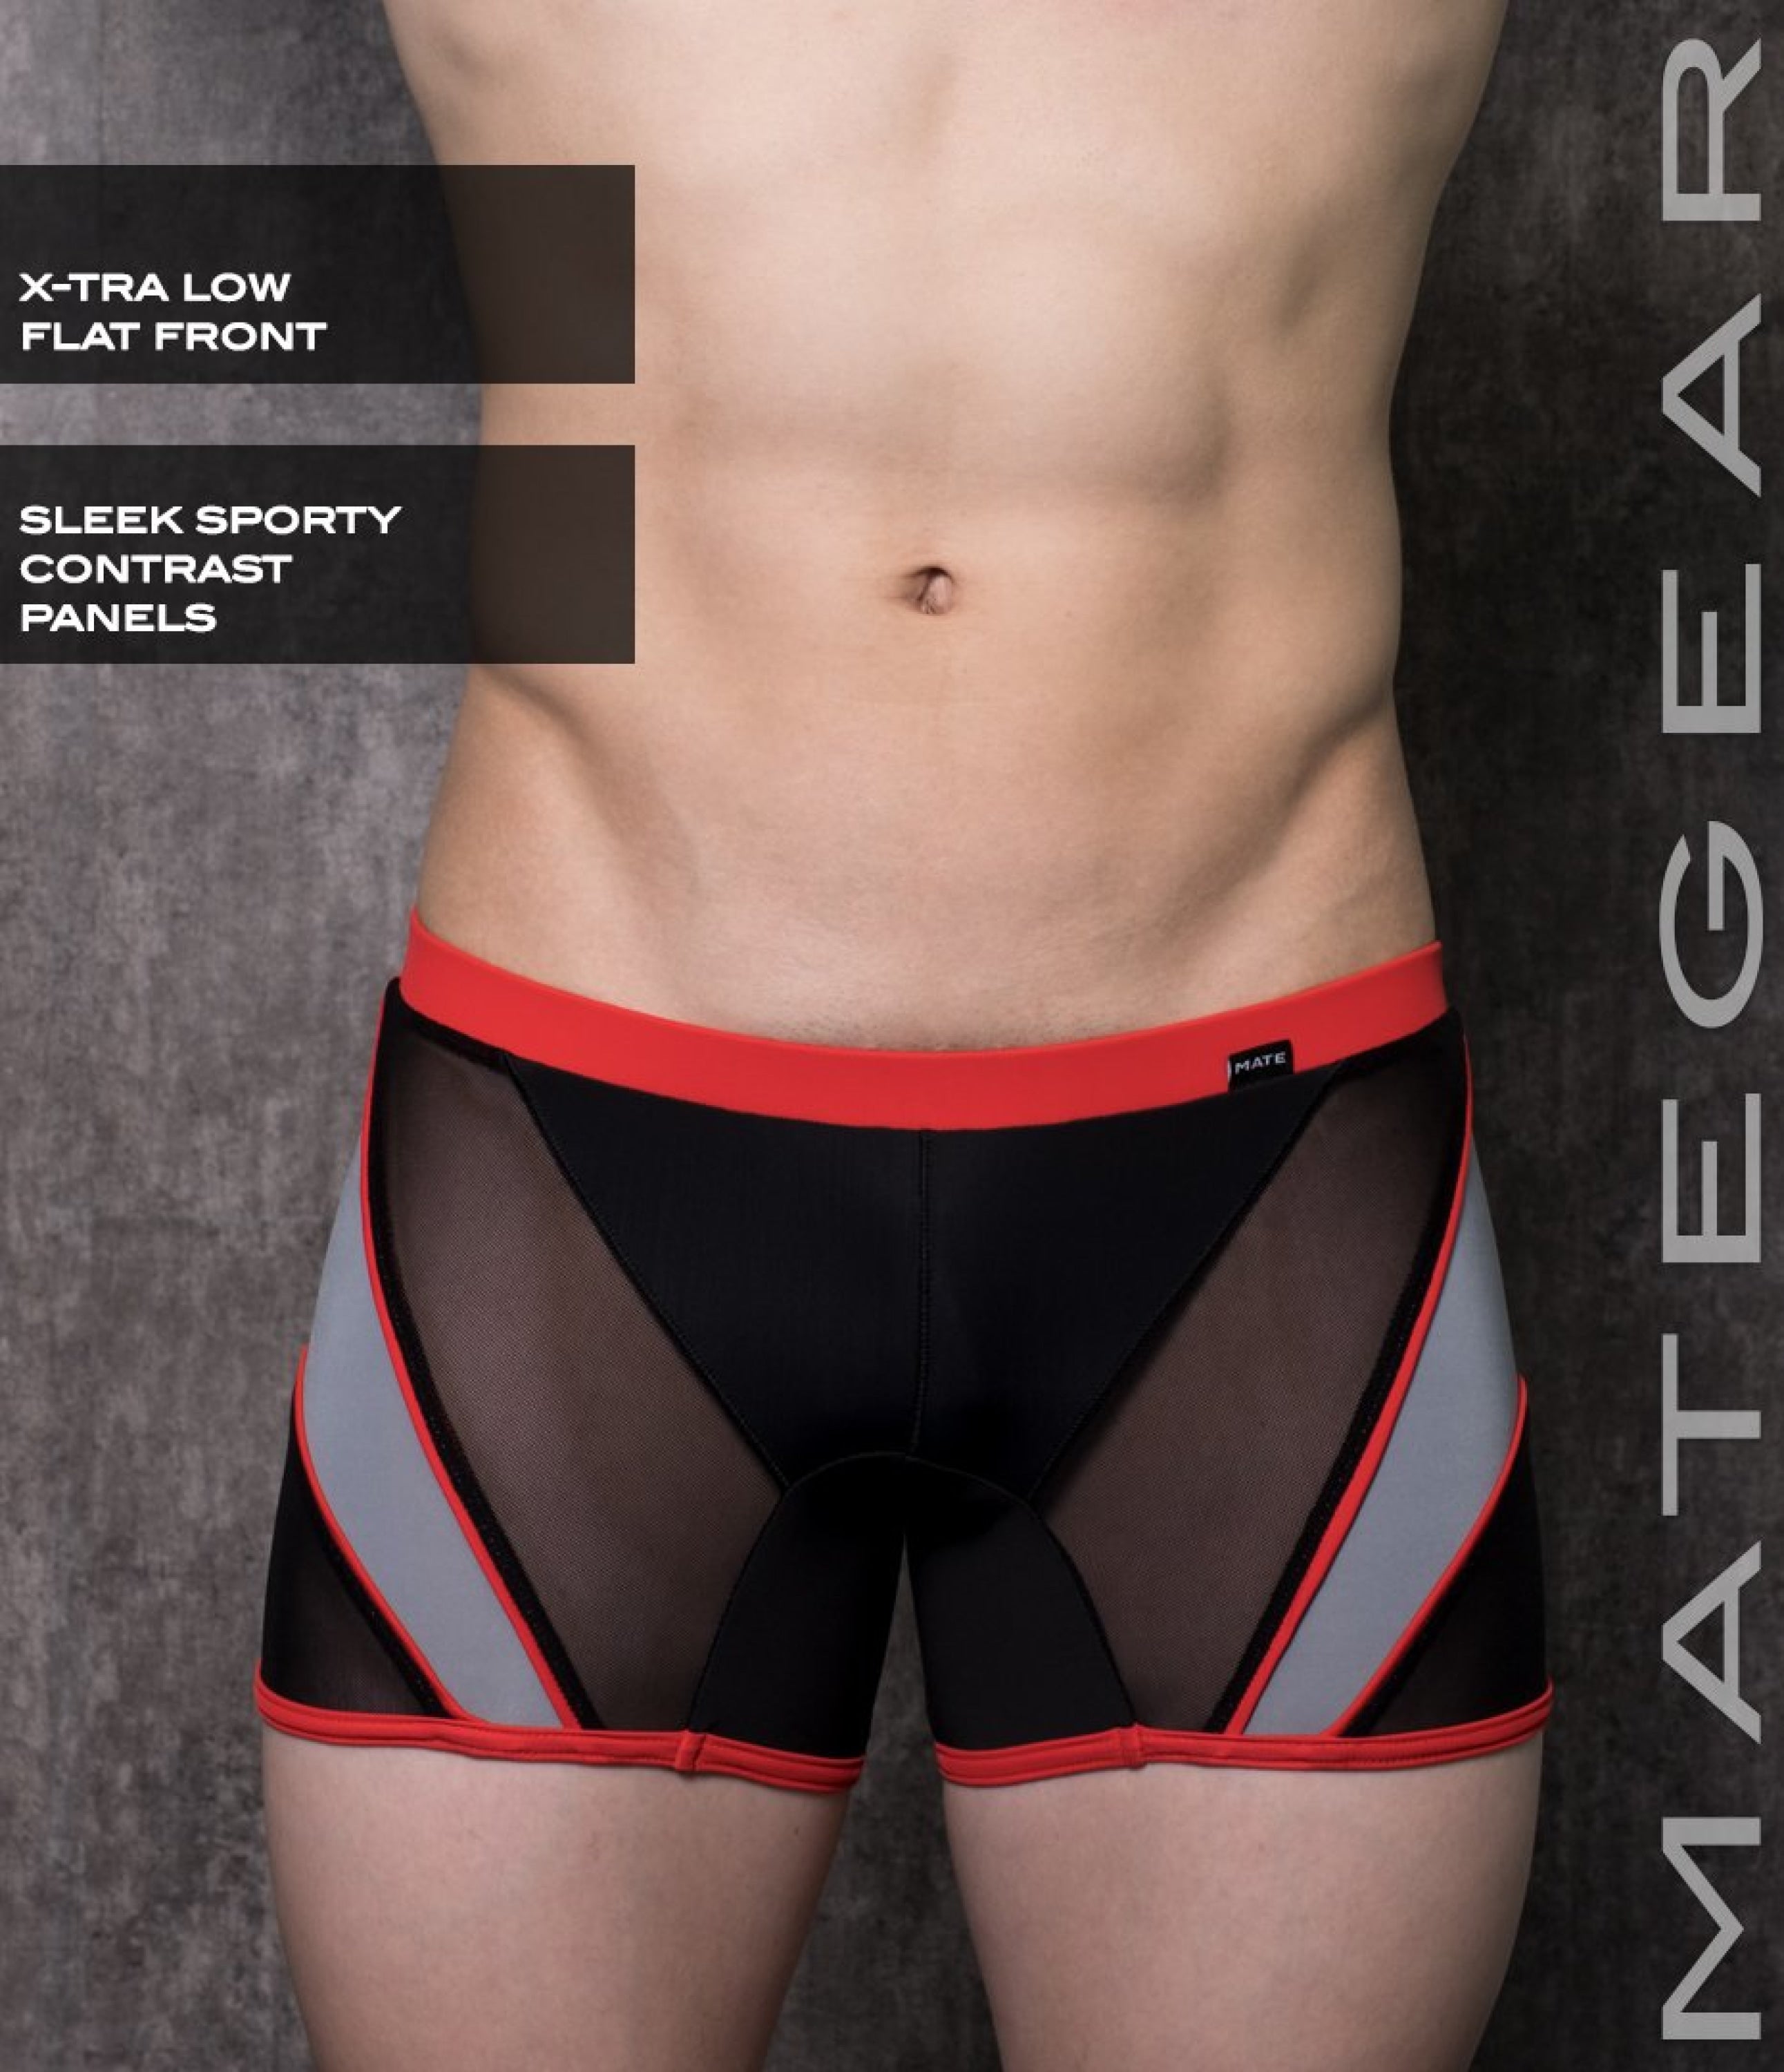 Sexy Mens Swimwear Mini Tights - Ryu Sook Ii (X-Tra Low Flat Front) Black Nylon / Small